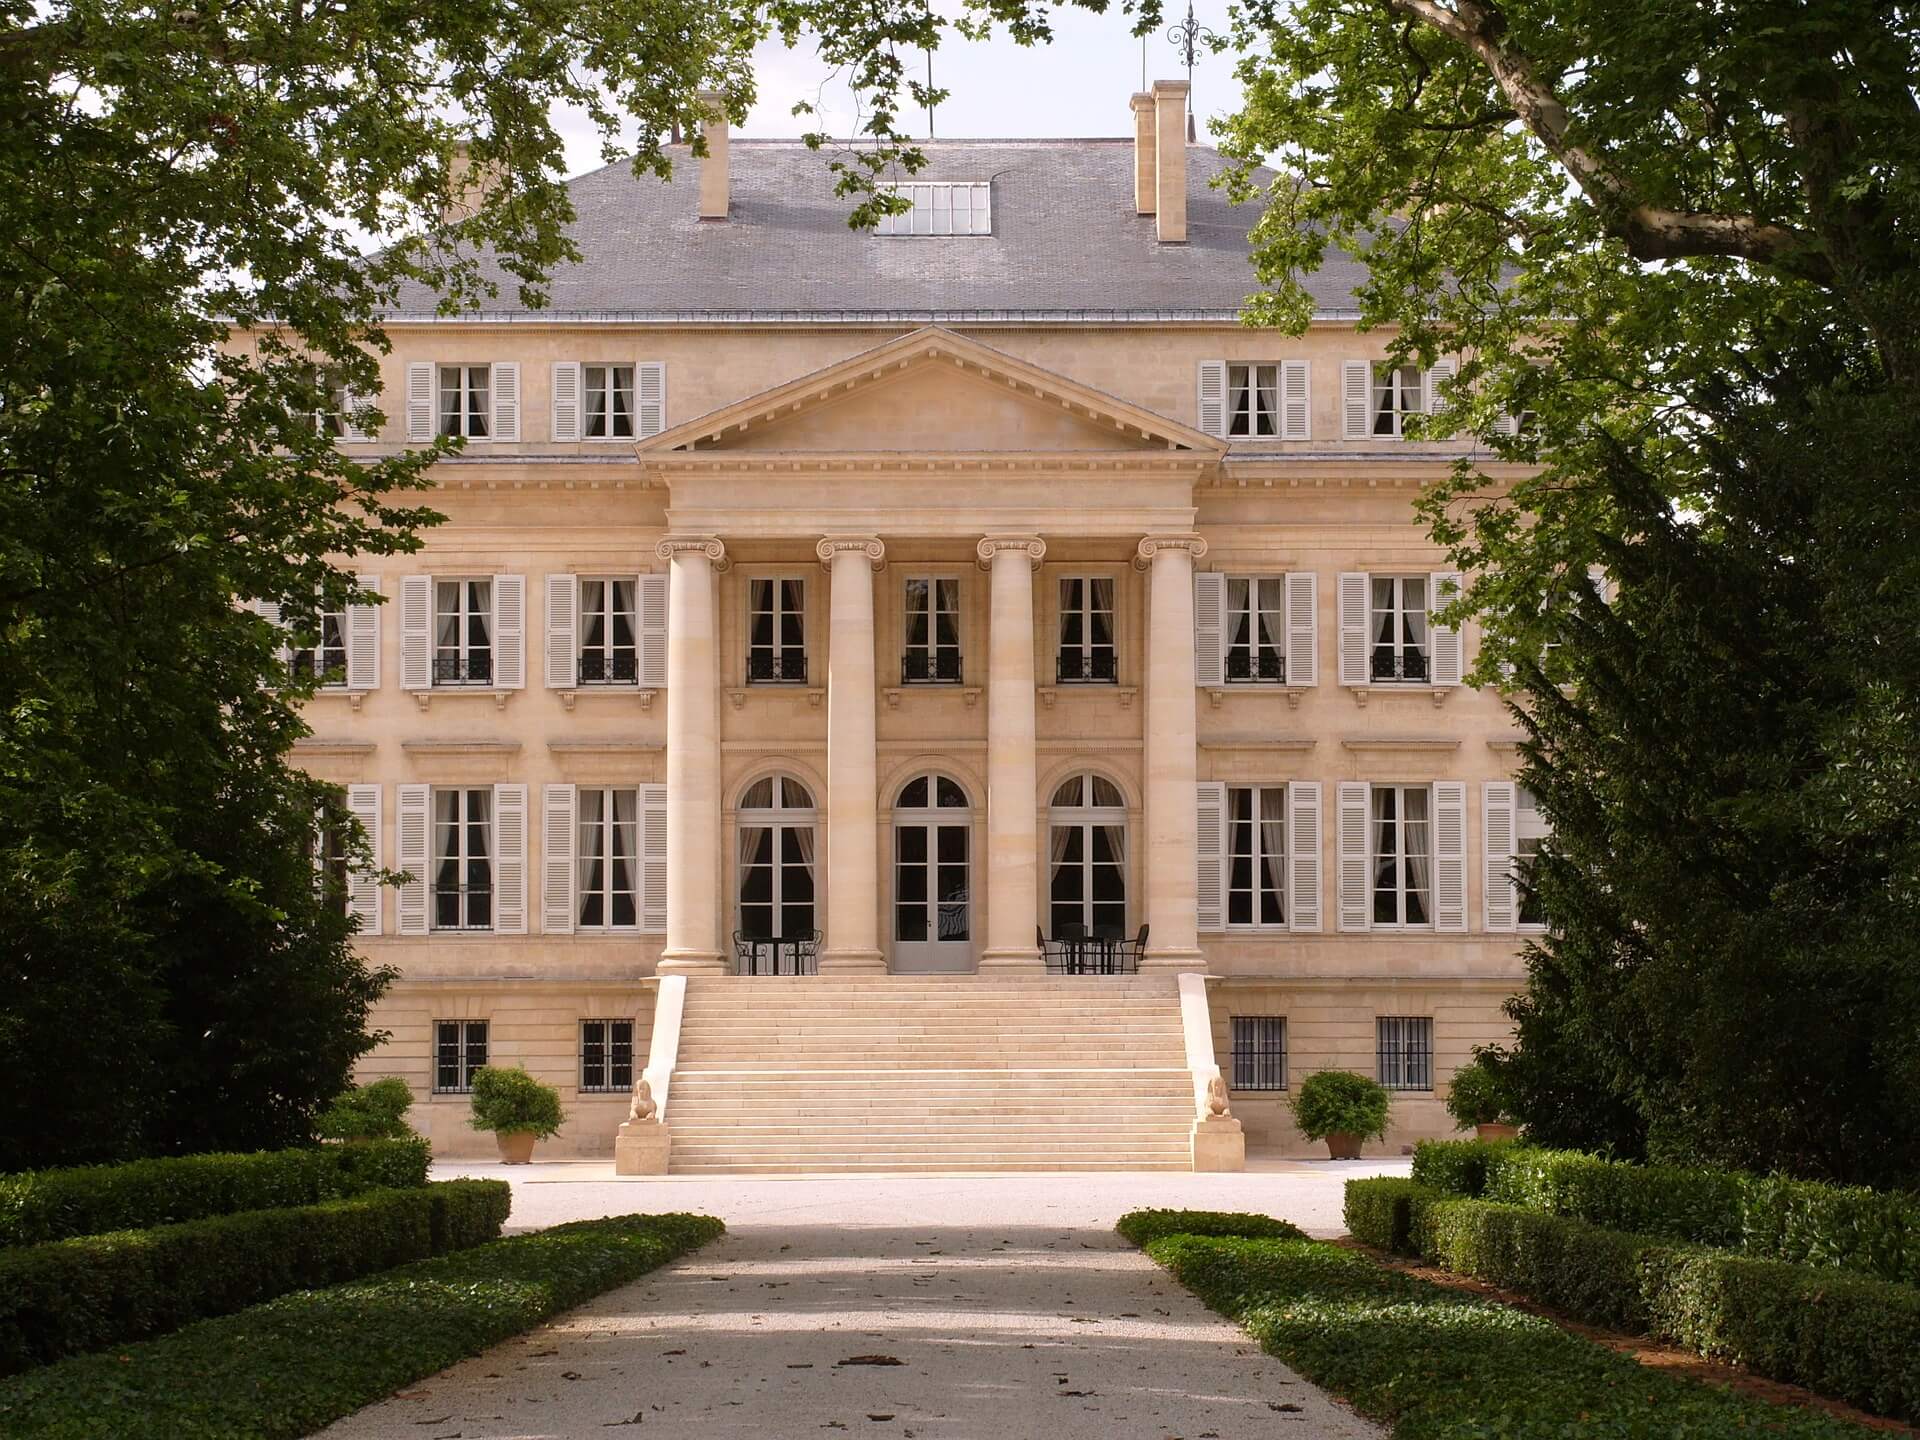 chateau-margaux-459568_1920.jpg